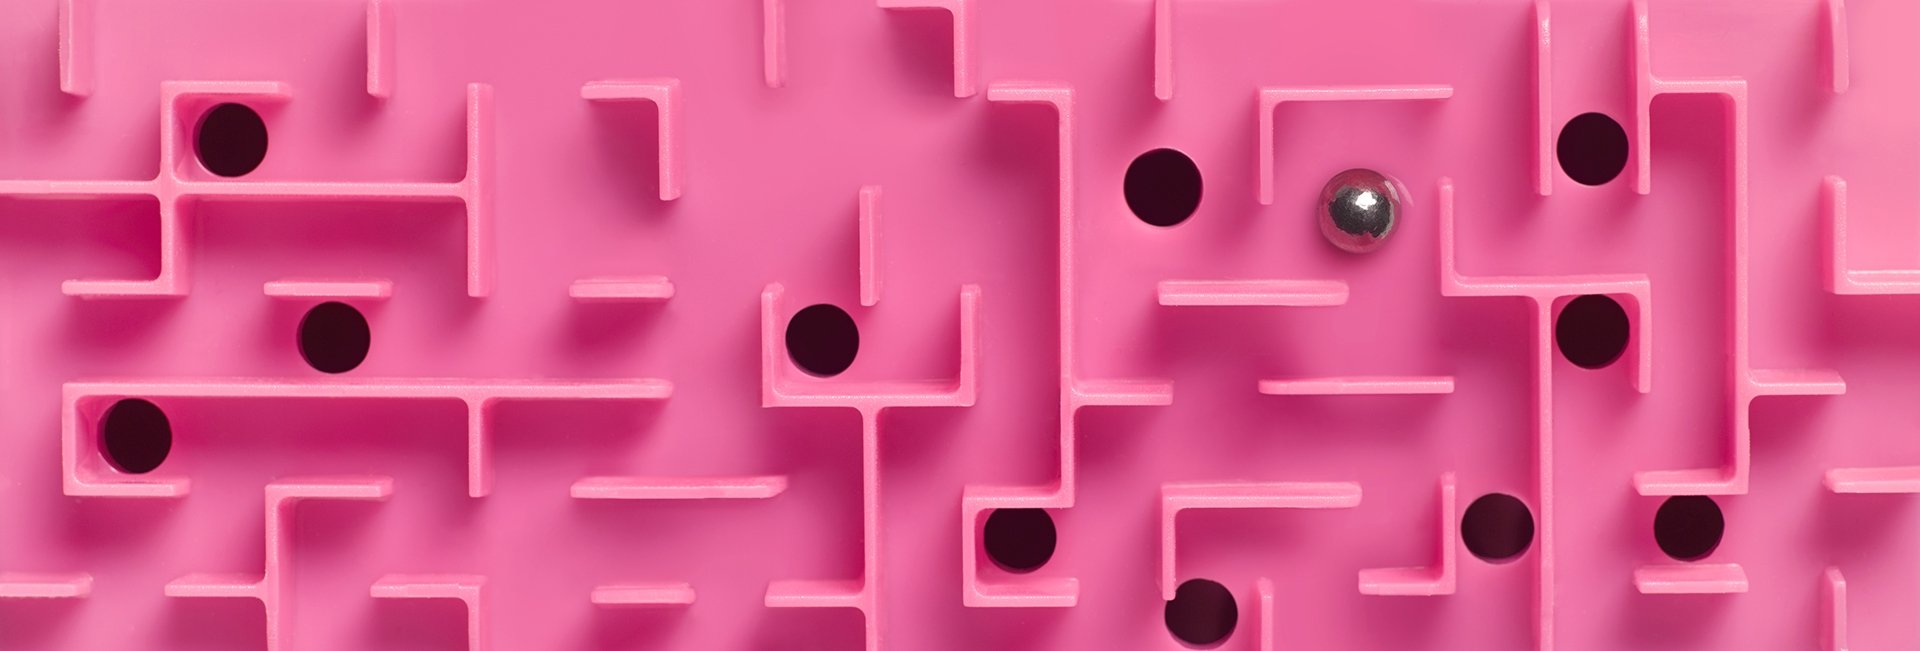 Pink ball maze